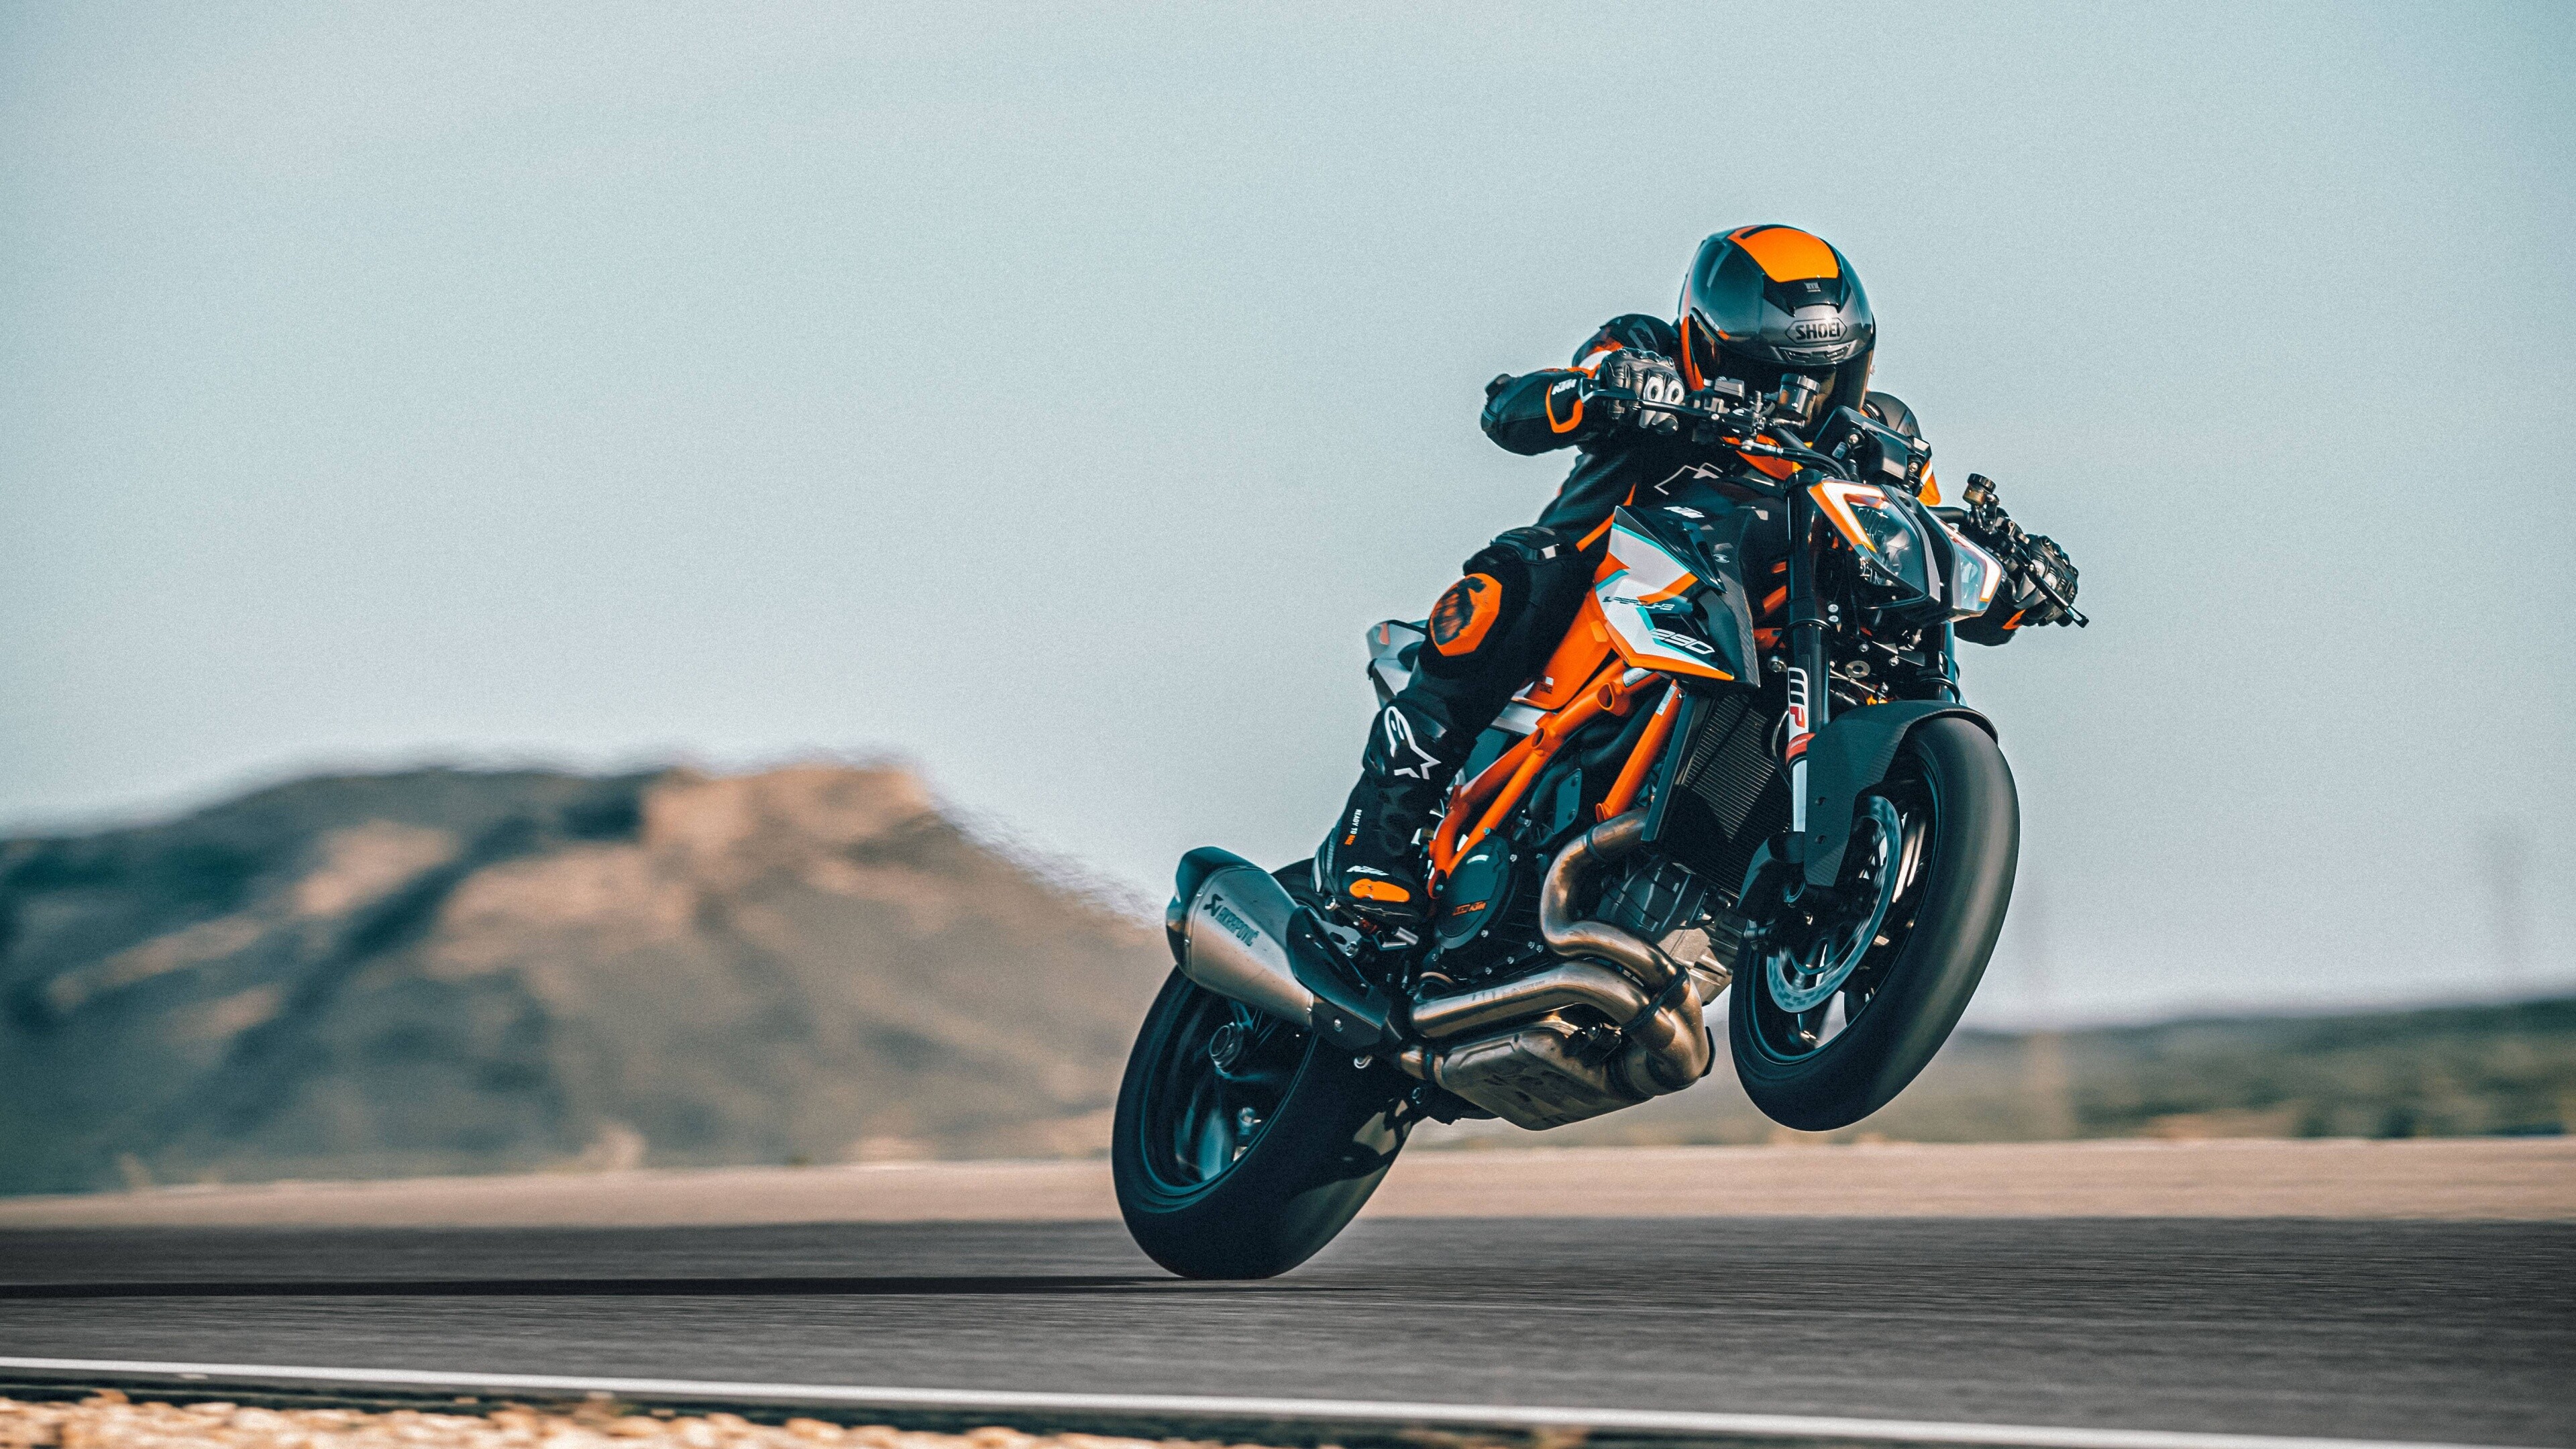 KTM motorcycles, Super Duke RR model, 2021 5K wallpaper, Adrenaline rush, 3840x2160 4K Desktop